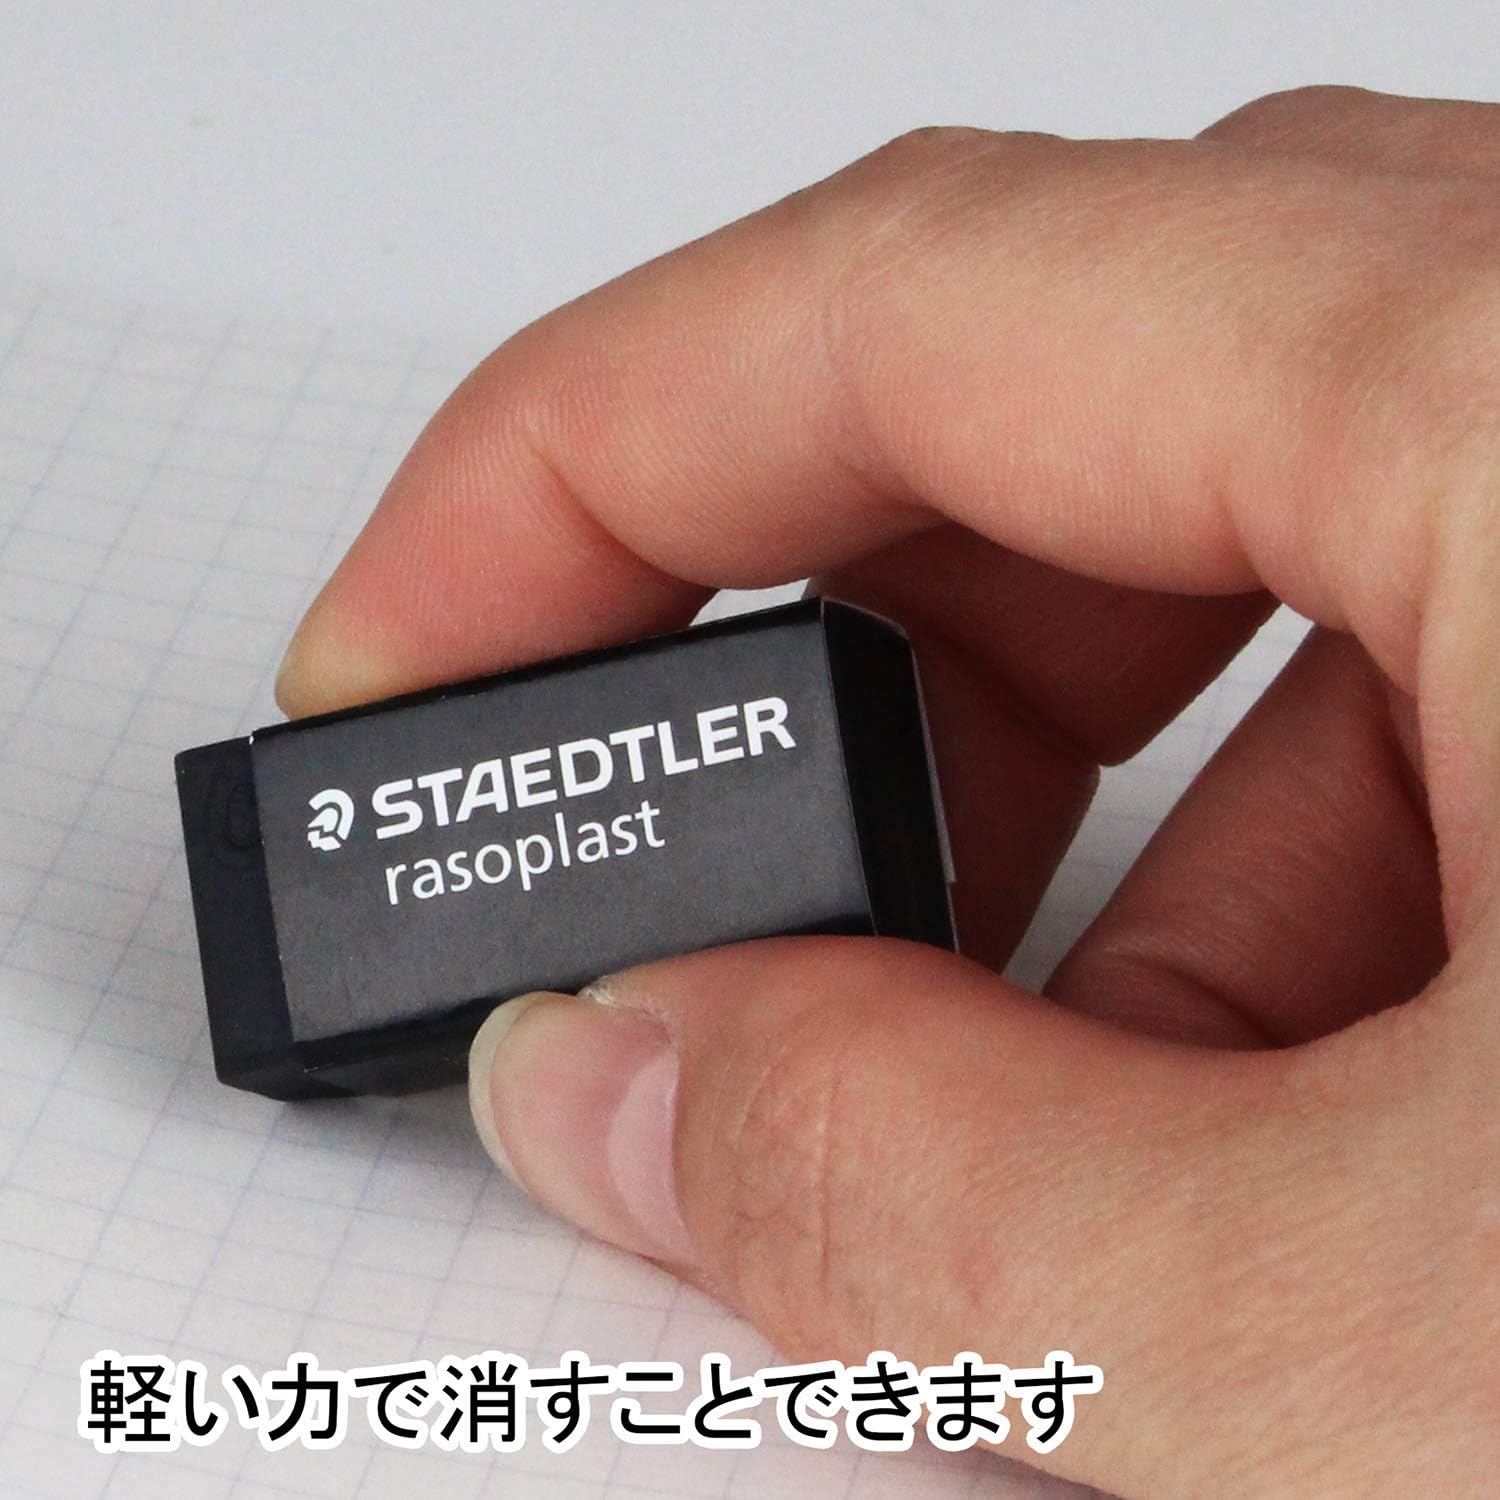 Staedtler Rasoplast 526-B40-9 Eraser - Black - 10 Pack